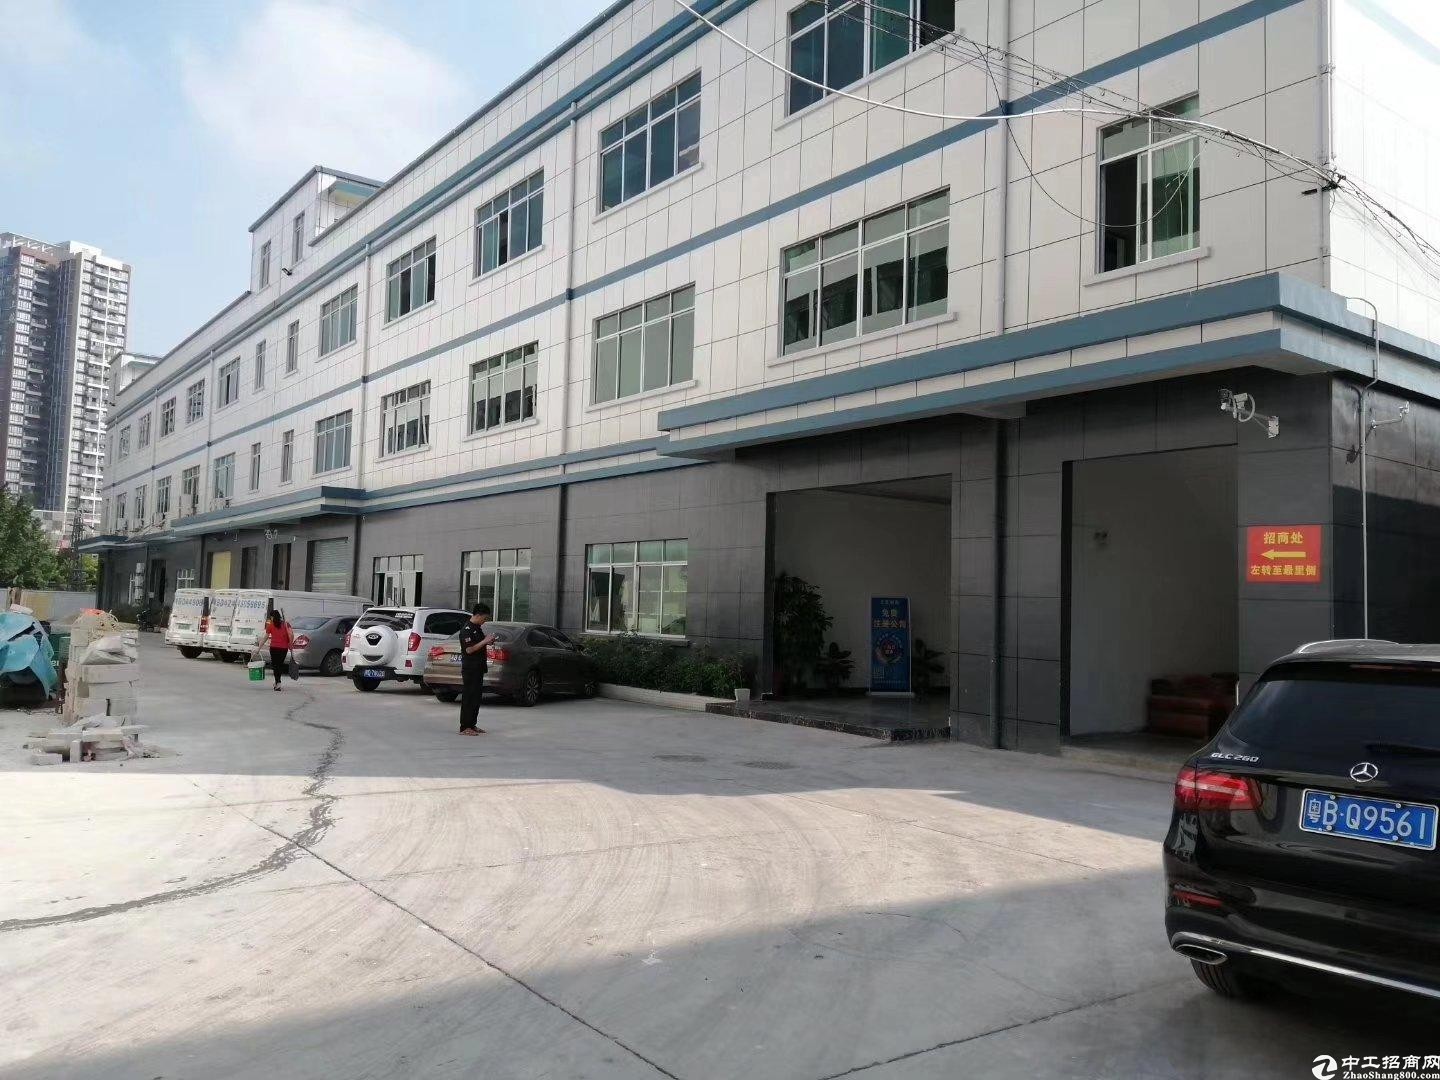 平湖街道禾花社区新出一楼180平厂房仓库出租。地铁口附近。